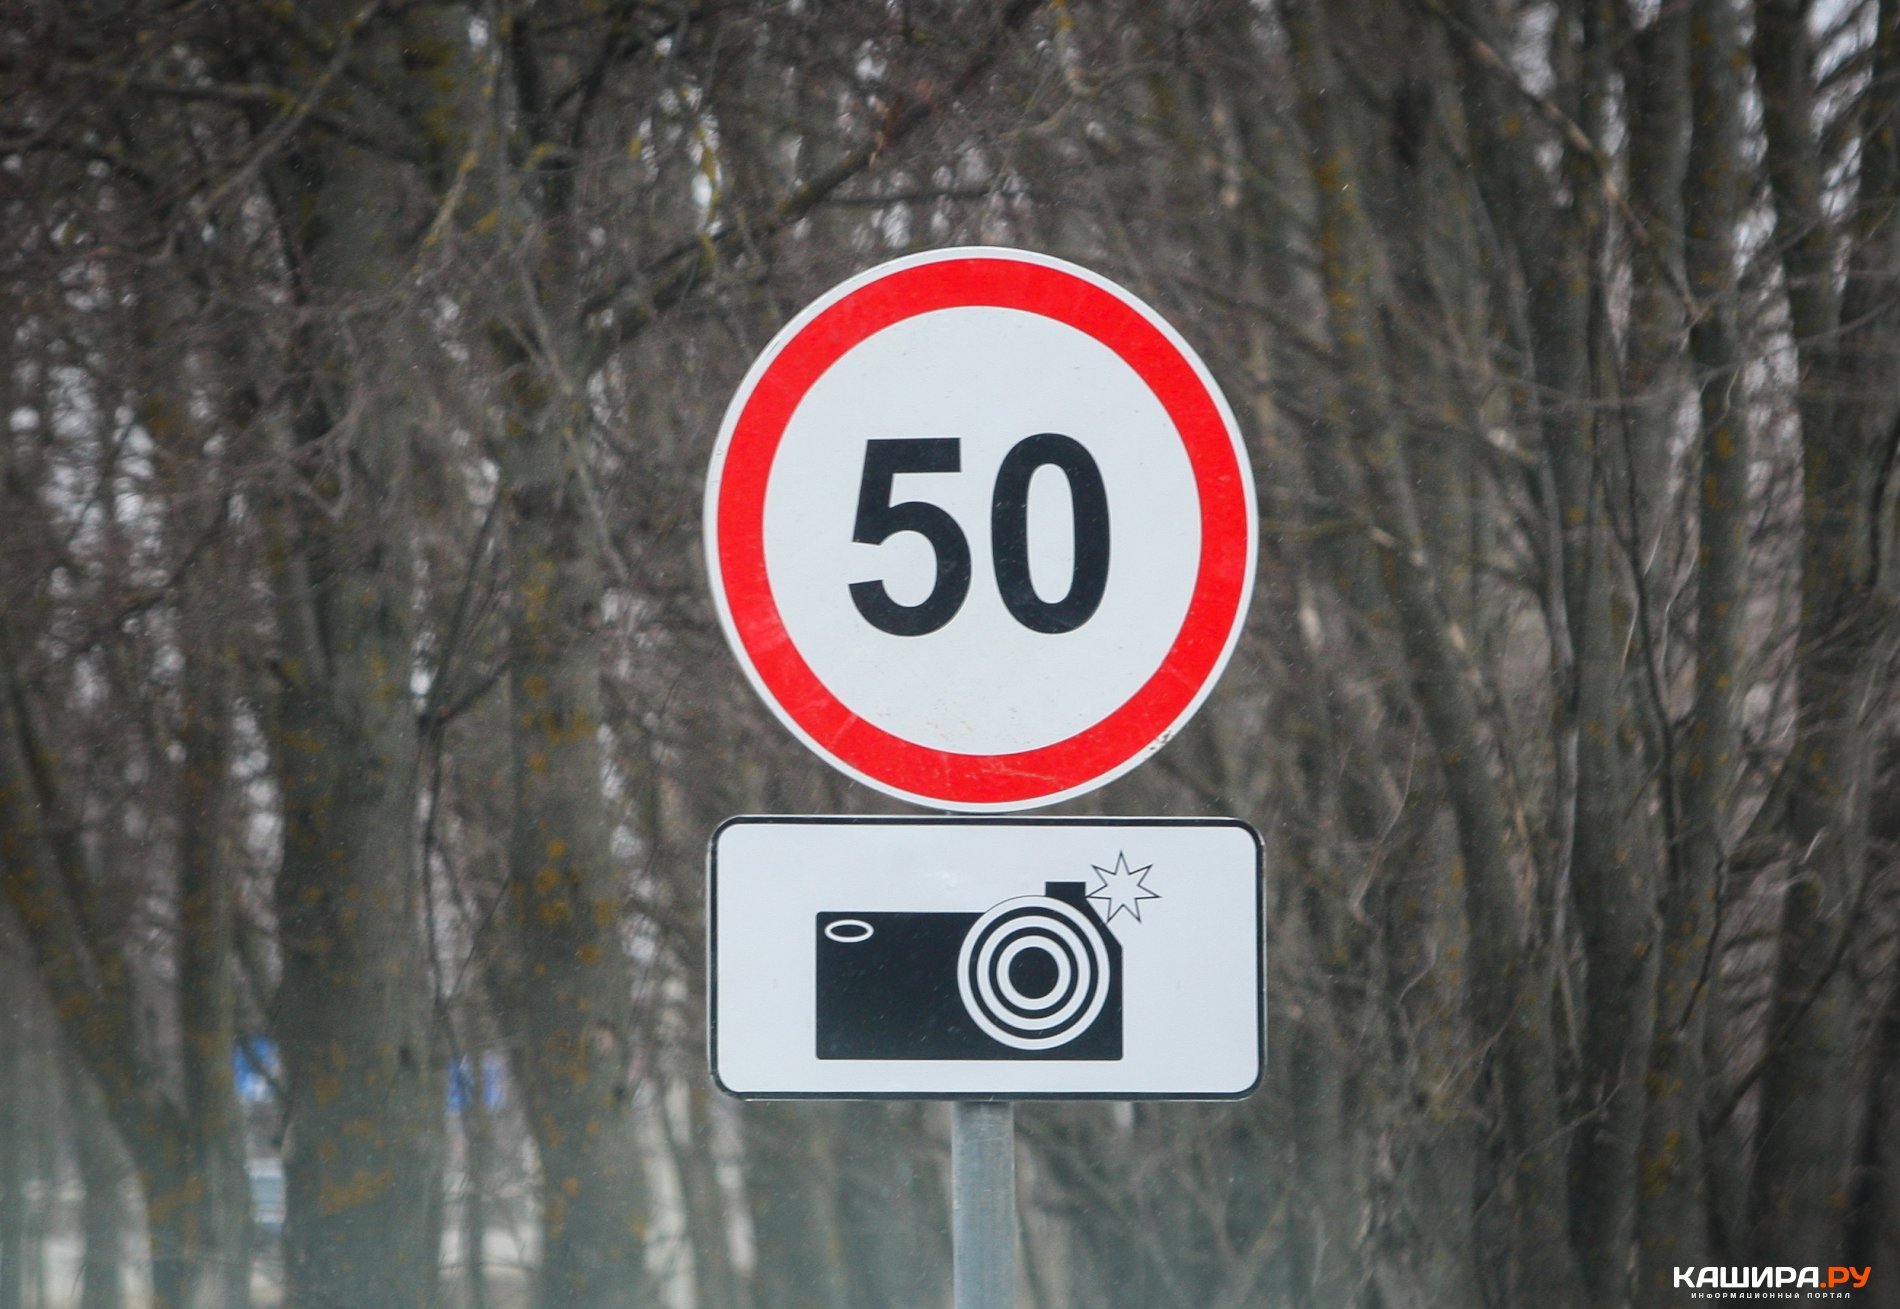 Камера максимальная скорость. Дорожный знак 8.23 Фотовидеофиксация. 6.22 Фотовидеофиксация дорожный знак. Знак 3.24 ограничение максимальной скорости 50. Знак ограничение скорости 50 км.